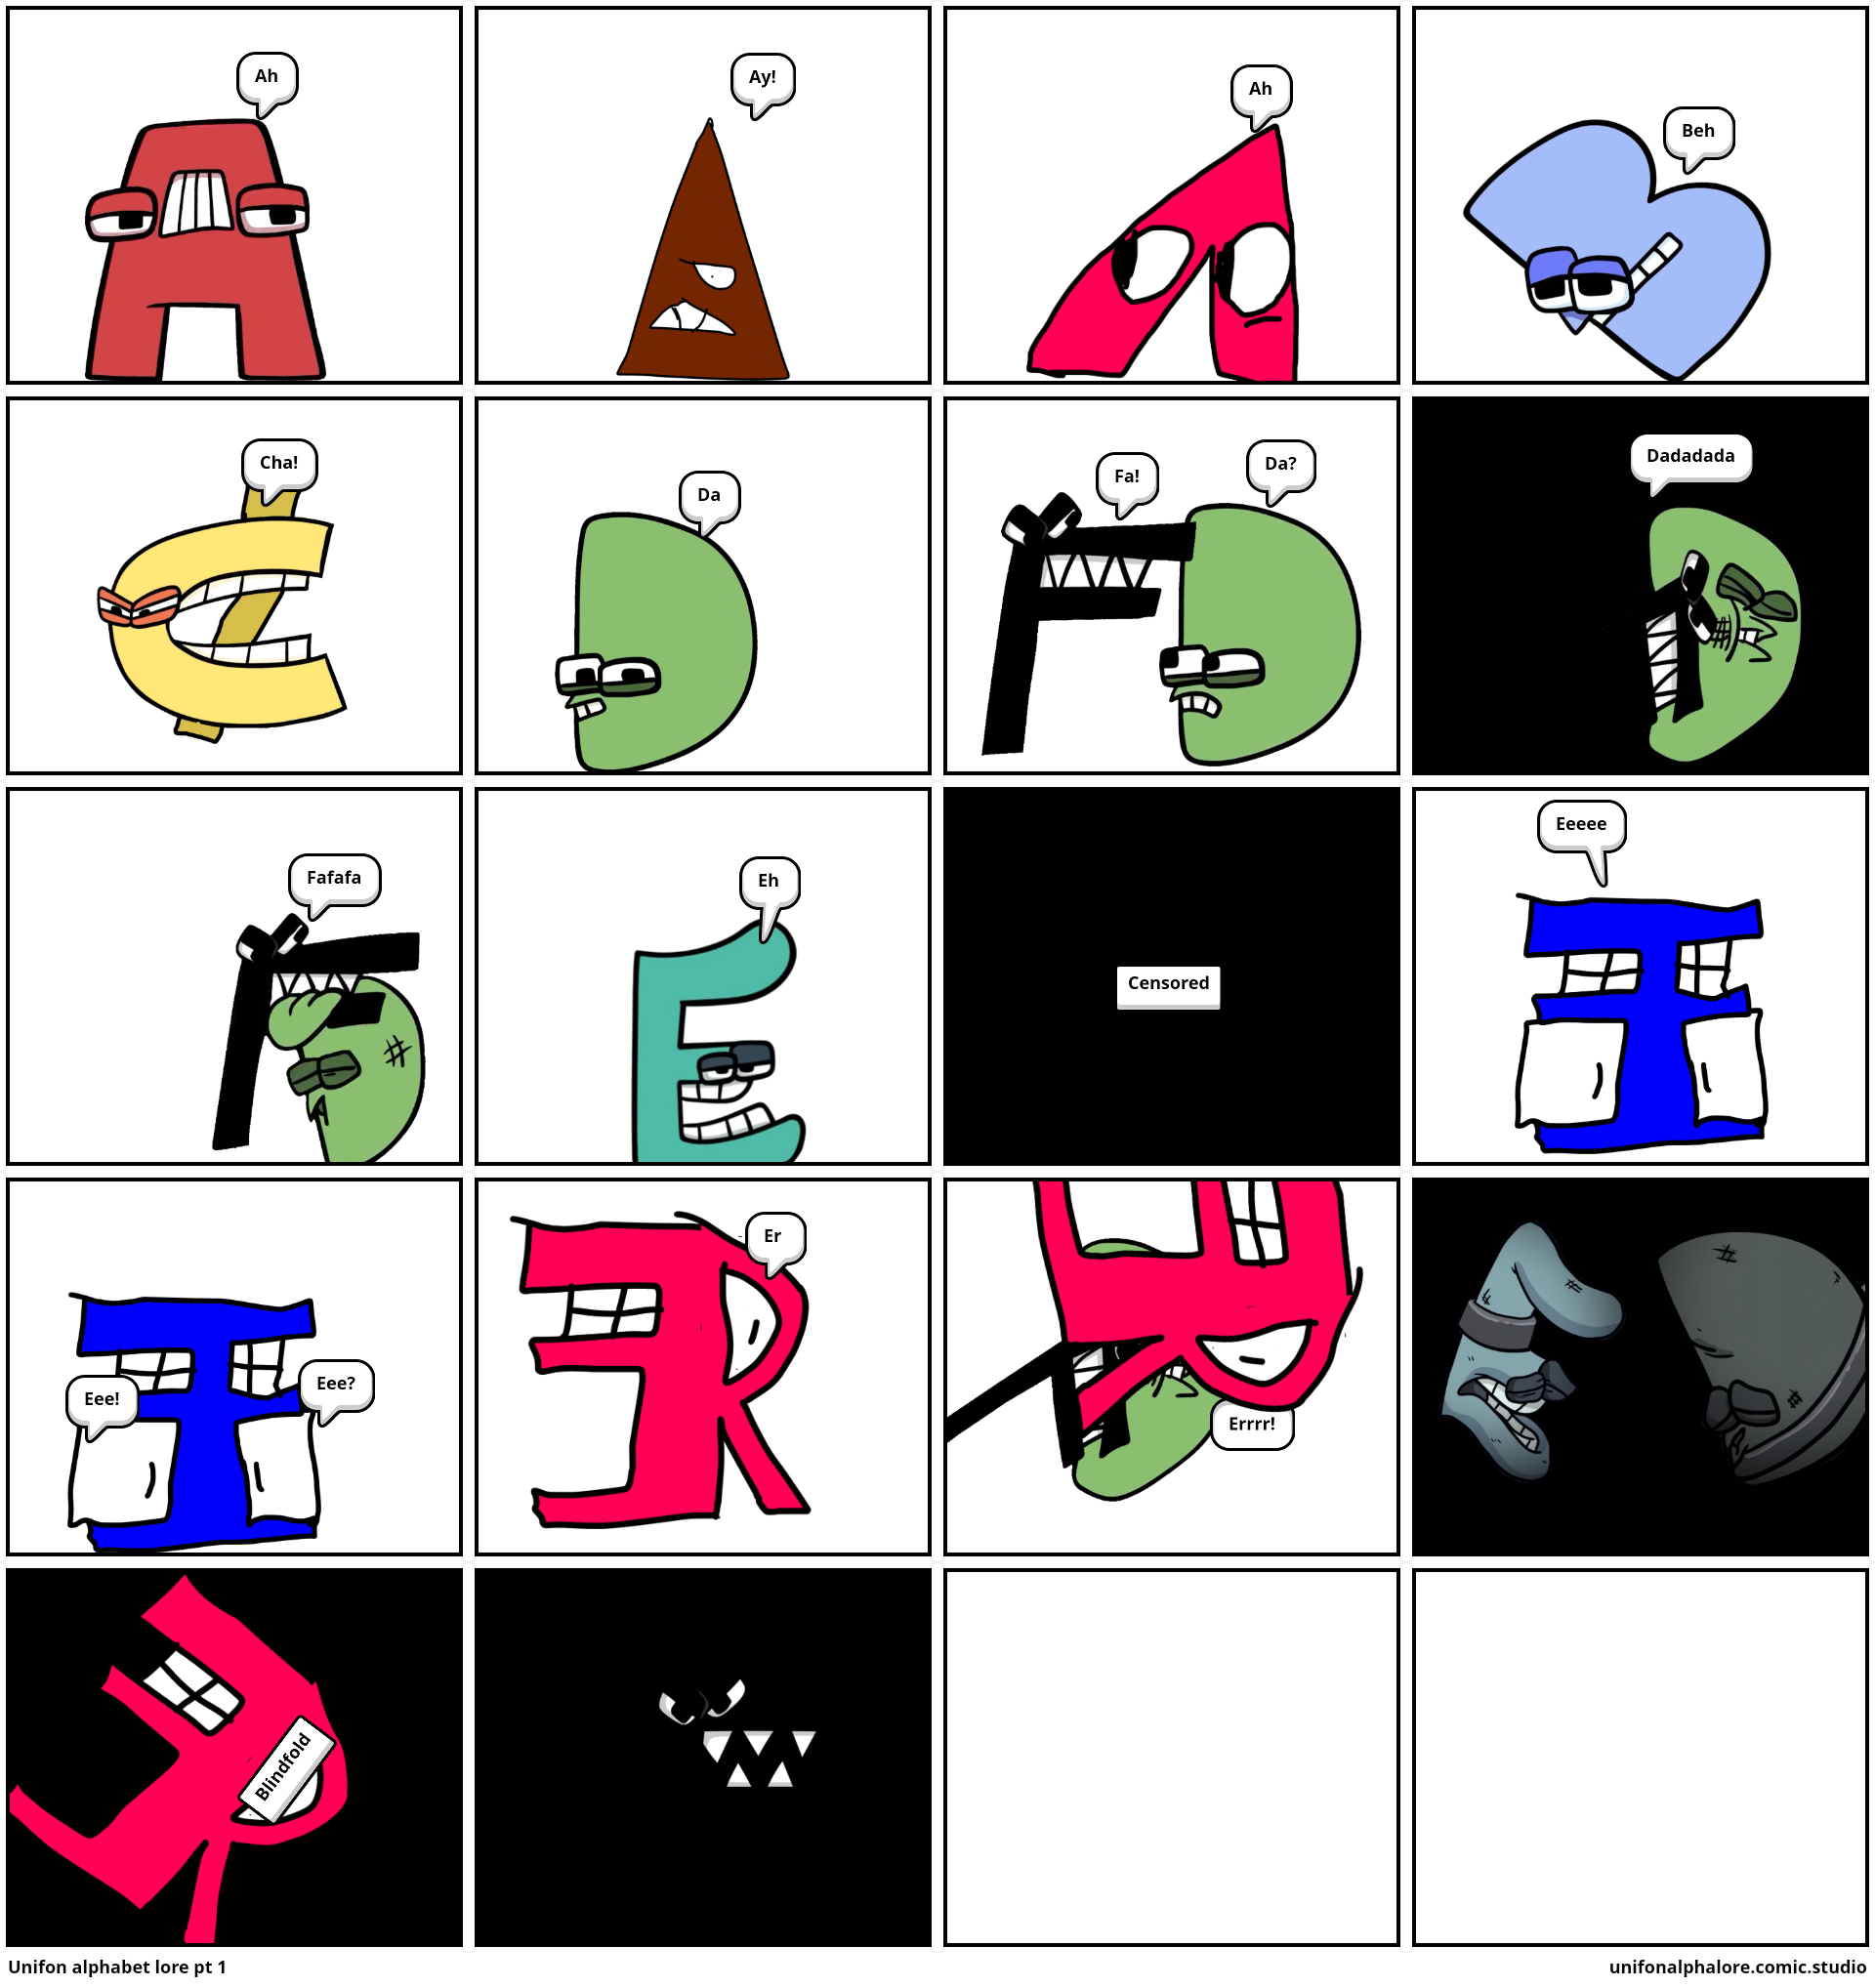 Unifon alphabet lore A-3E - Comic Studio